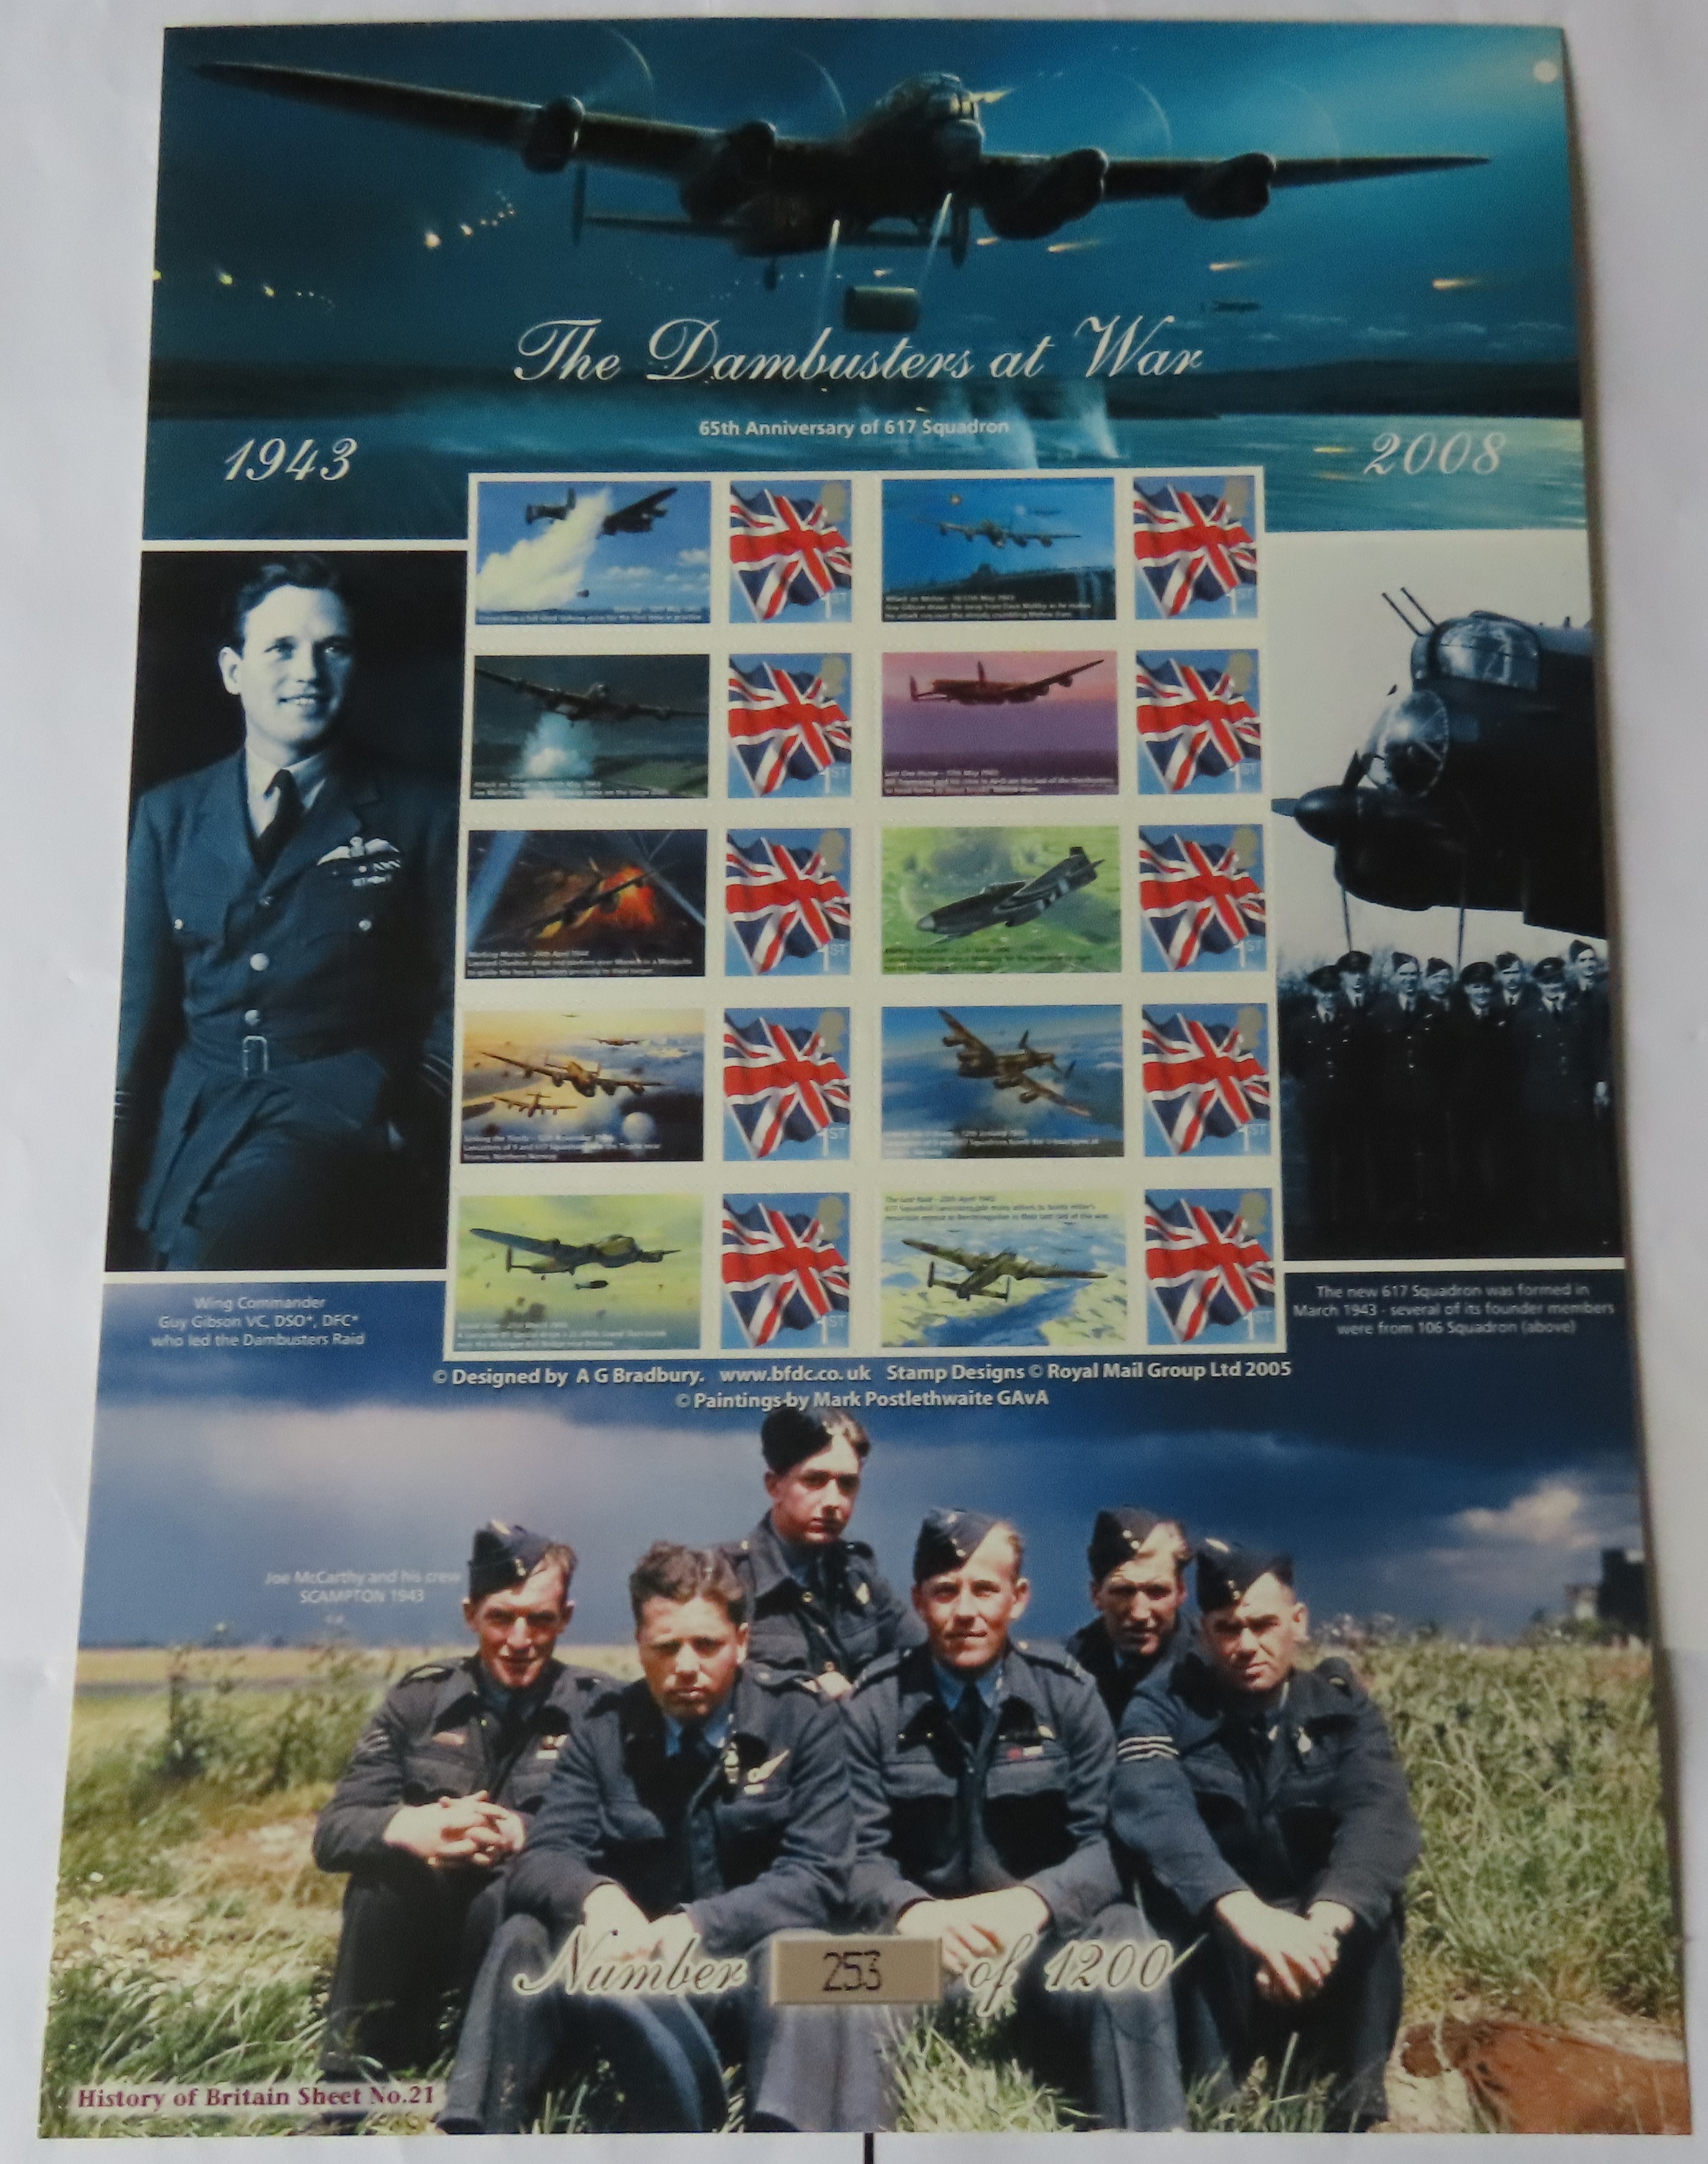 GB 2008 The Dam busters at War, Royal Mail / Bradbury History of Britain Sheet no 21. 10 x first